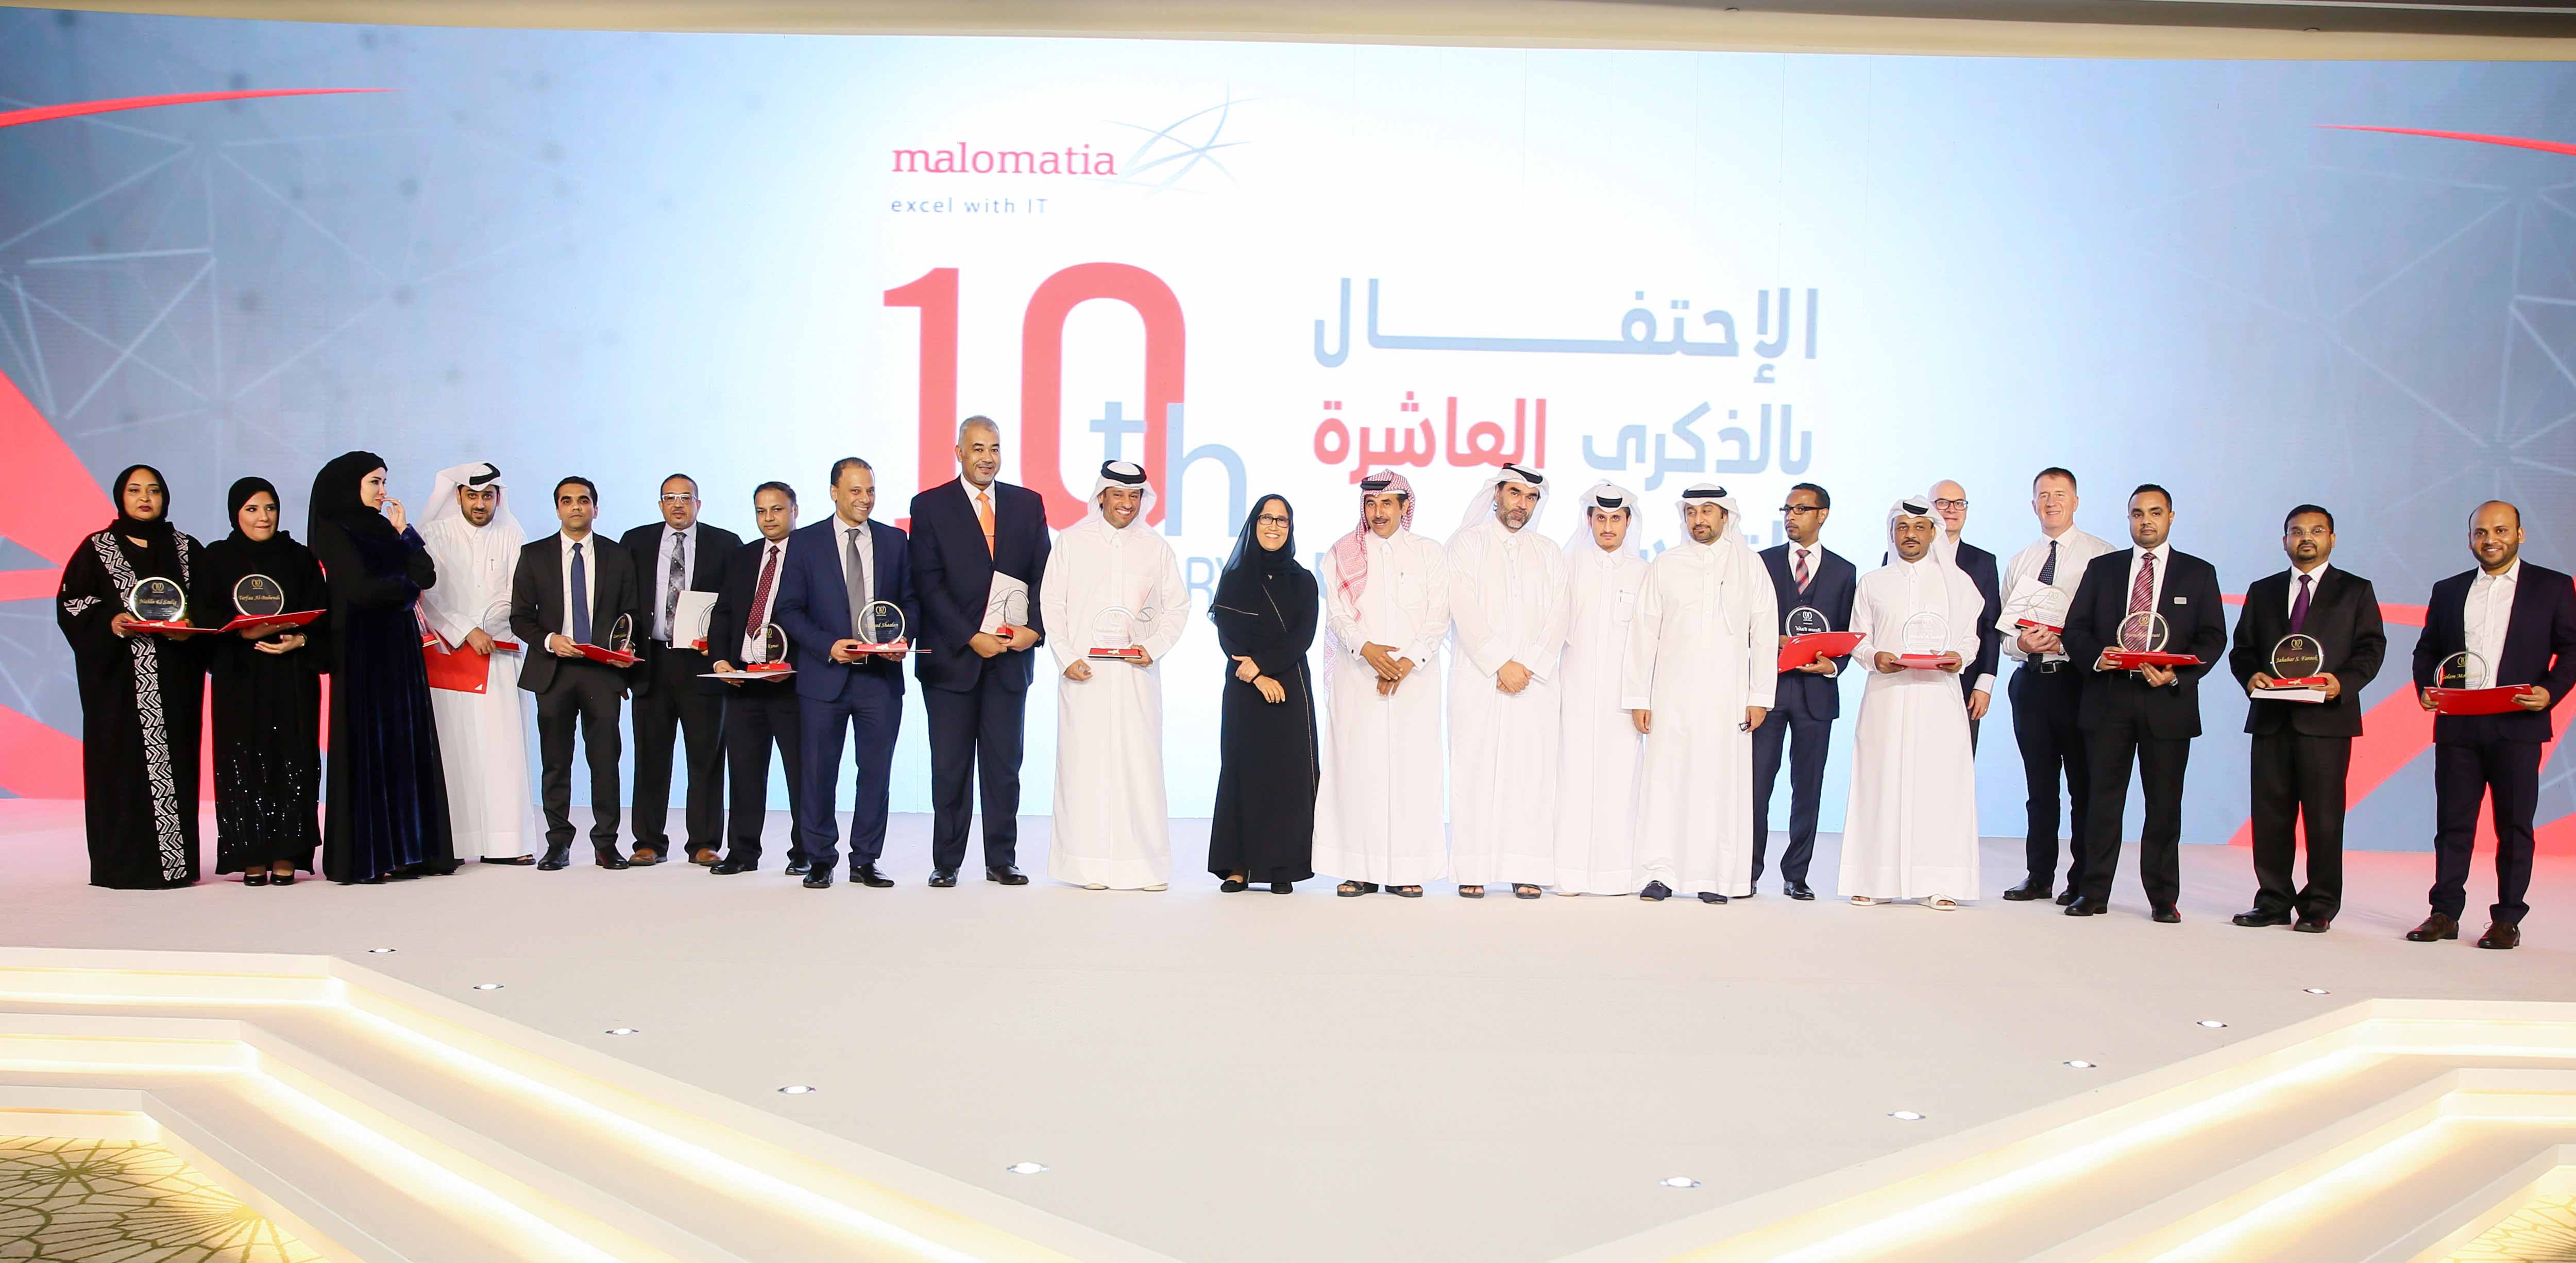 malomatia celebrates 10th Anniversary